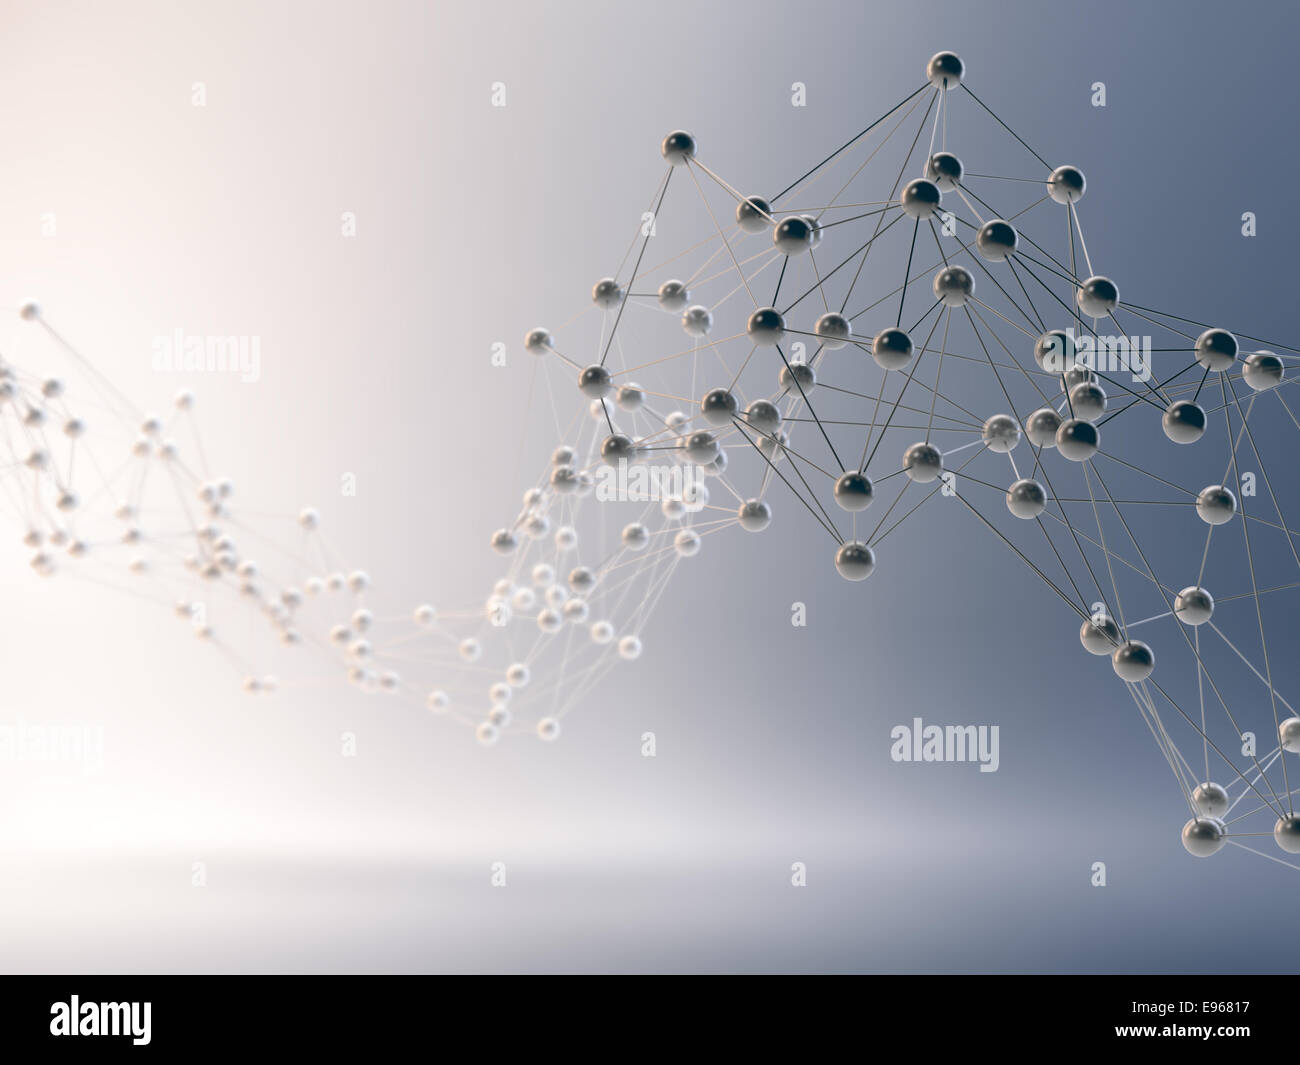 Abstrakt 3D Netzwerke - Kommunikation und Internet-Konzept Stockfoto